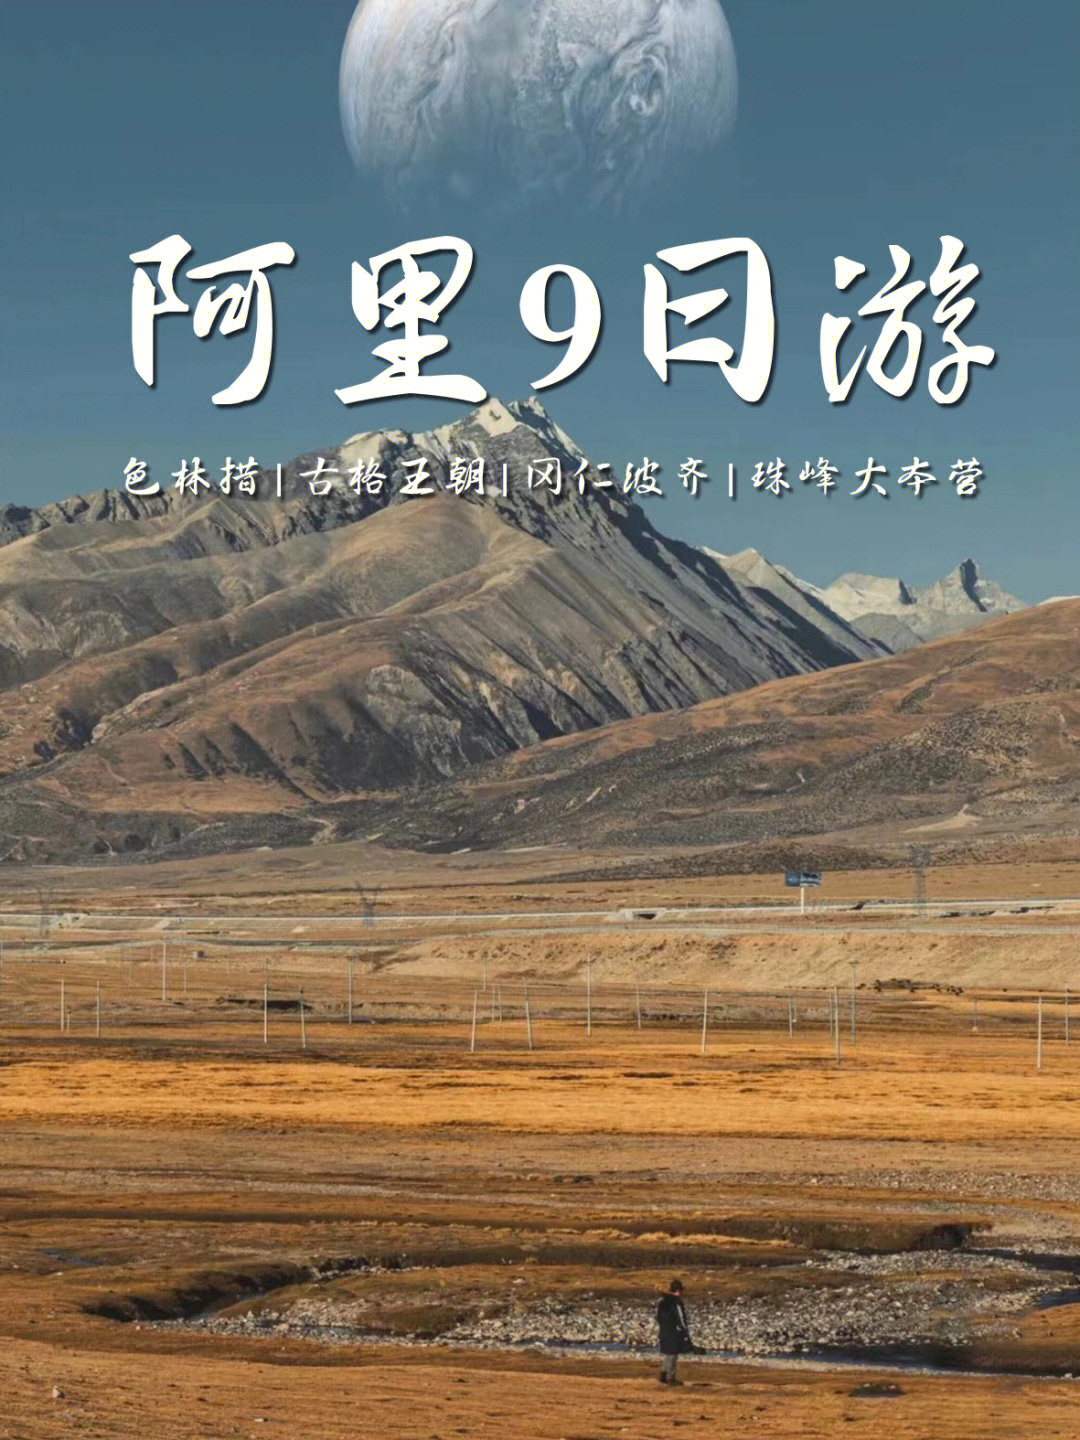 西藏旅游路线推荐，阿里大线+珠峰13天左右